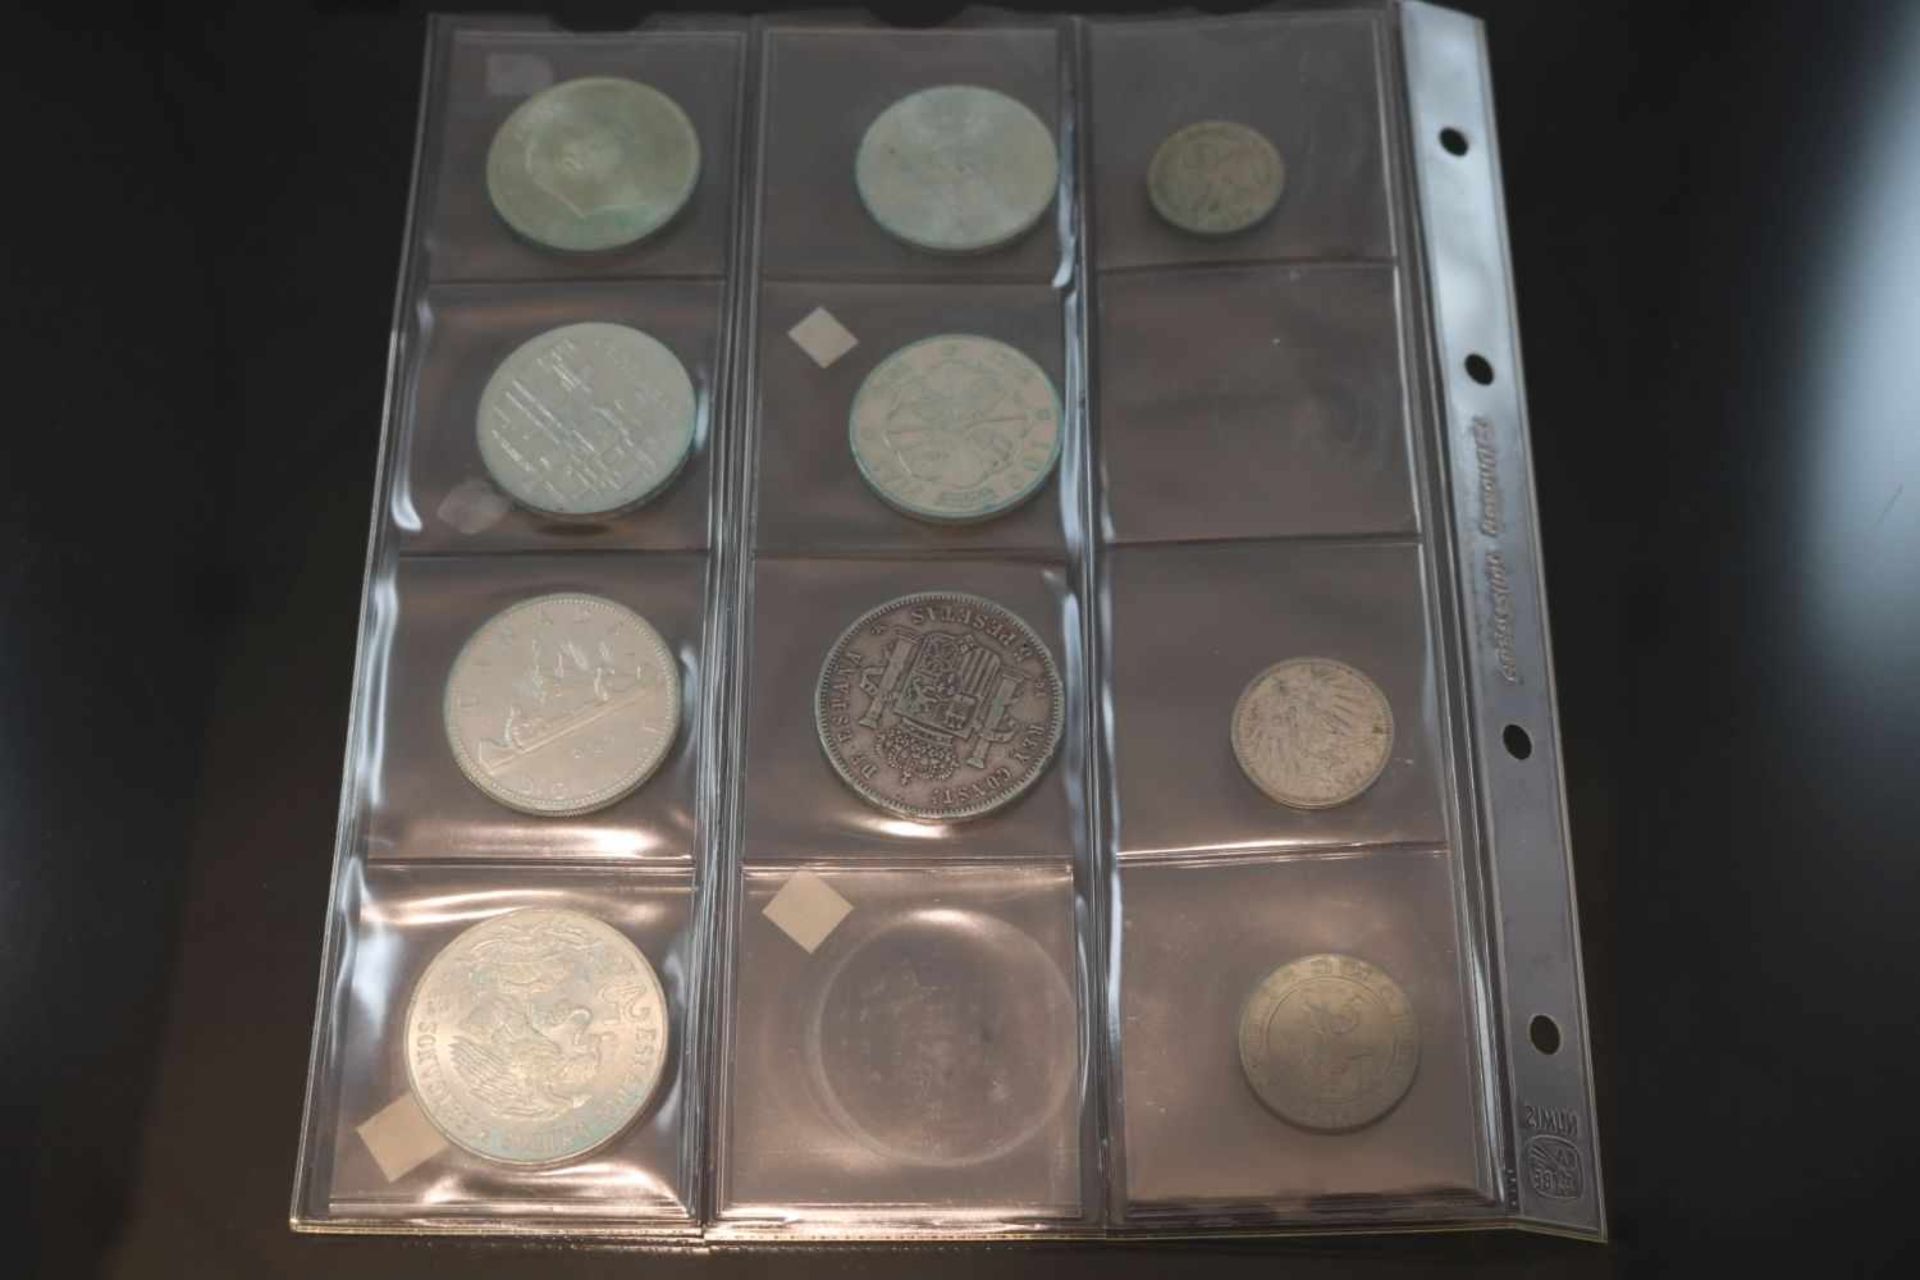 Münz-Konvolut10 Münzen diverser Währungen und Jahrgänge.- - -25.00 % buyer's premium on the hammer - Bild 2 aus 2